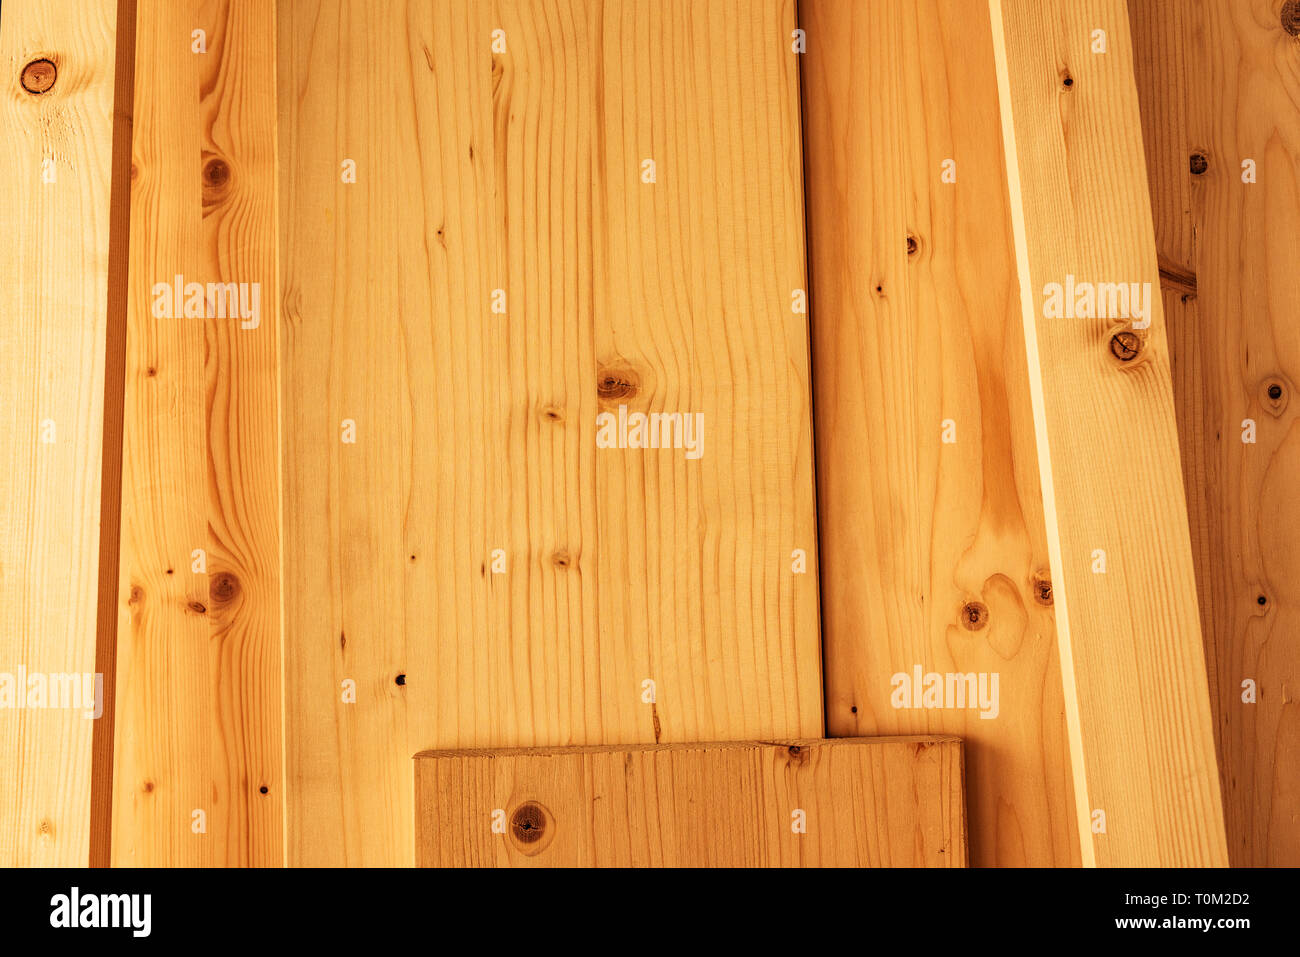 Divers planches de bois de pin dans la Menuiserie Ébénisterie Atelier, matériel pour bricolage temps libre Banque D'Images